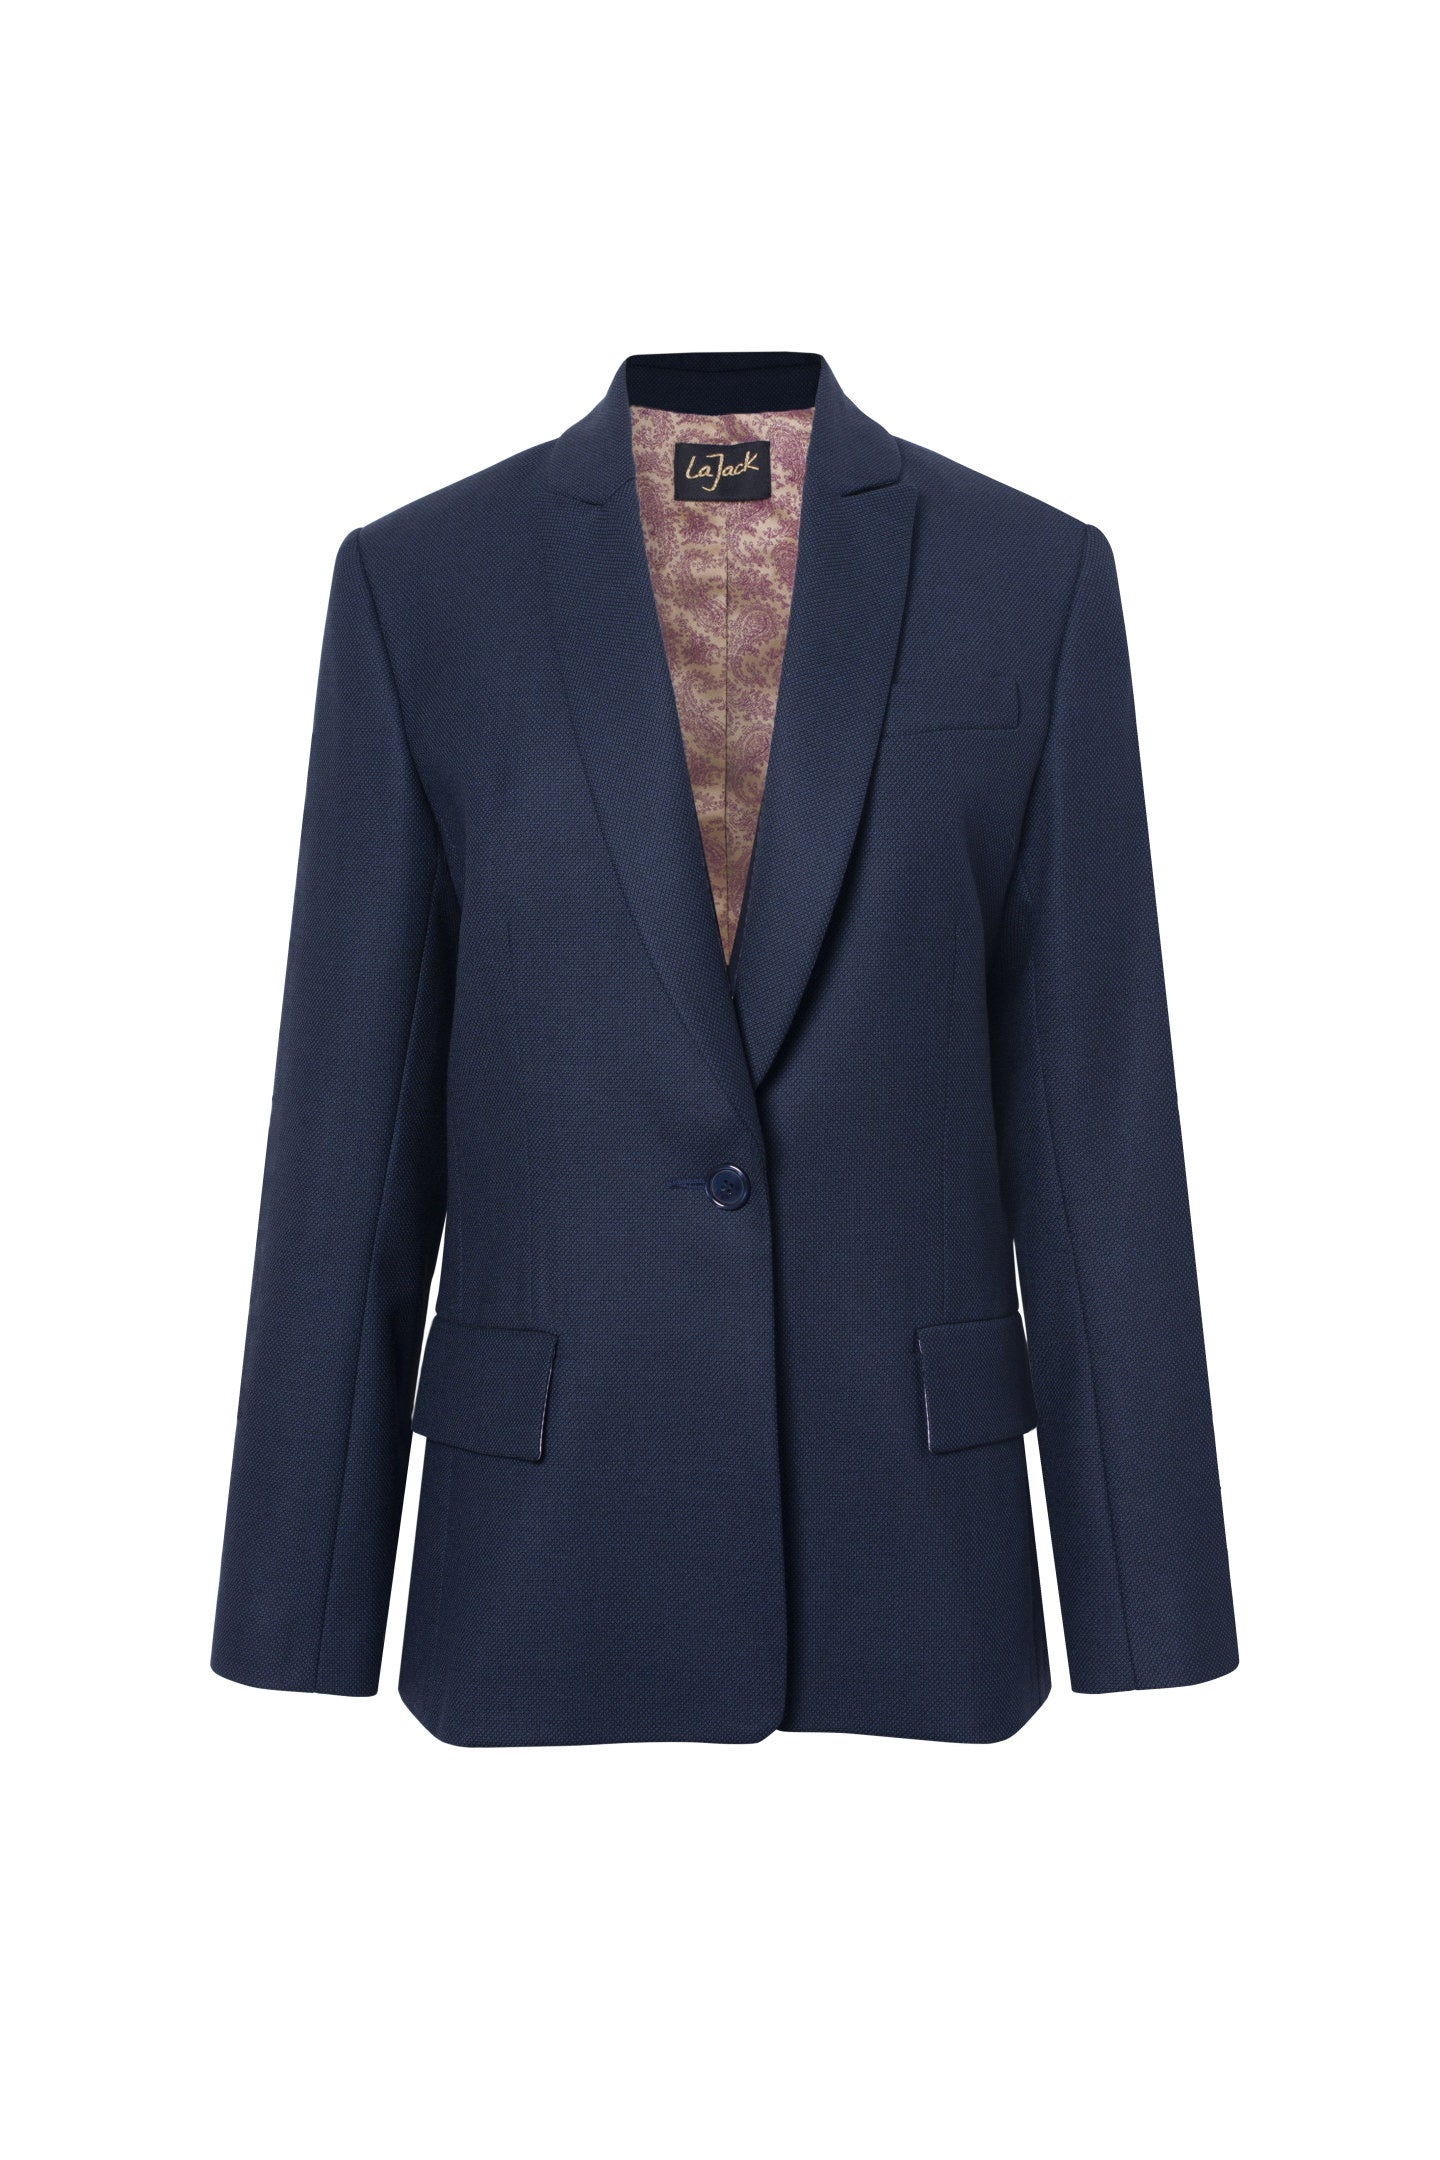 La Sophia - Navy Blue Wool Blazer Jacket with Caviar Pattern